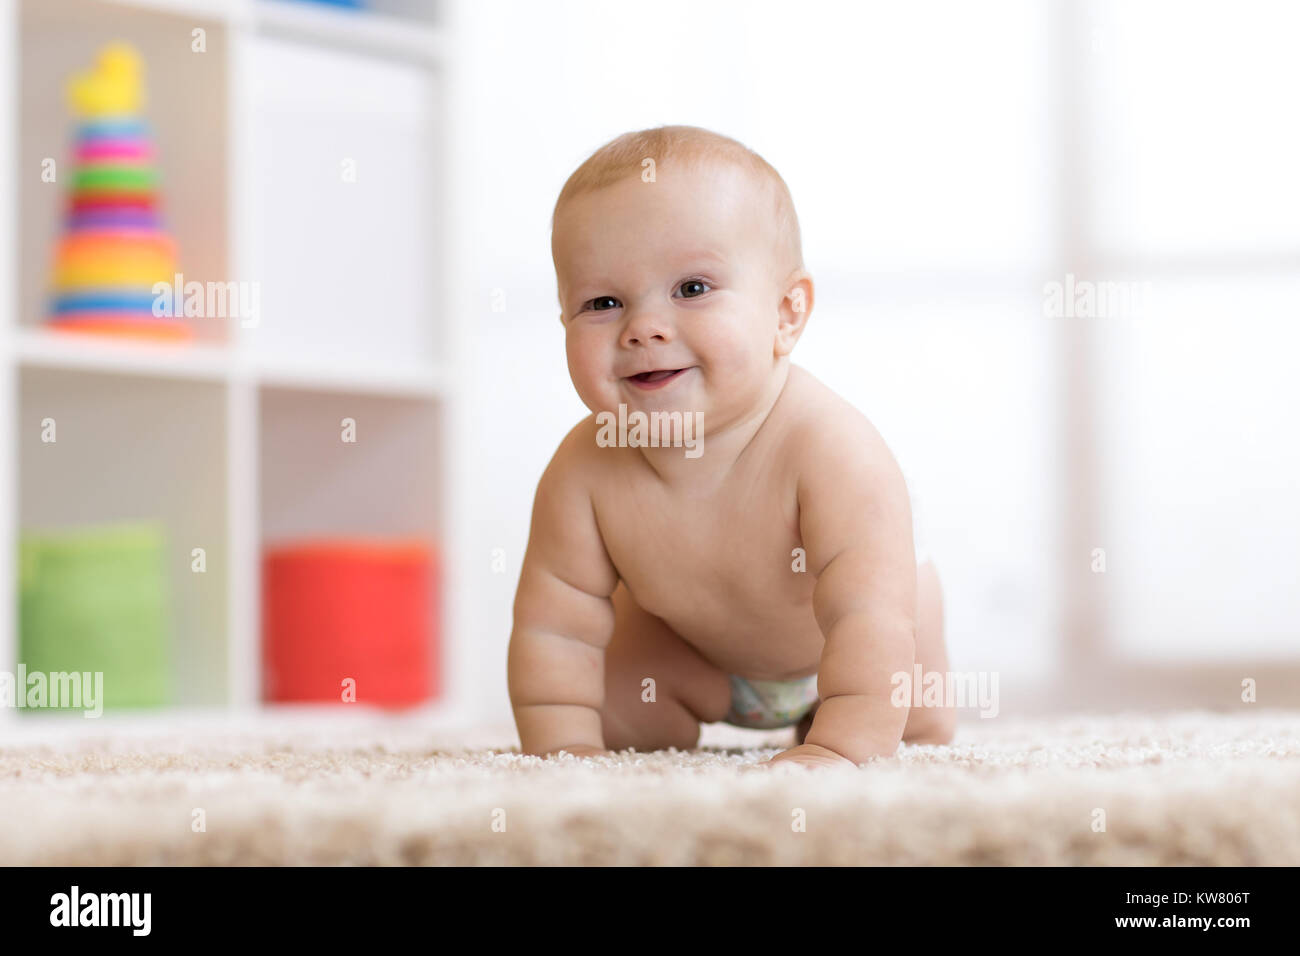 Bastante rastrero desgastada en el pañal del bebé Foto de stock